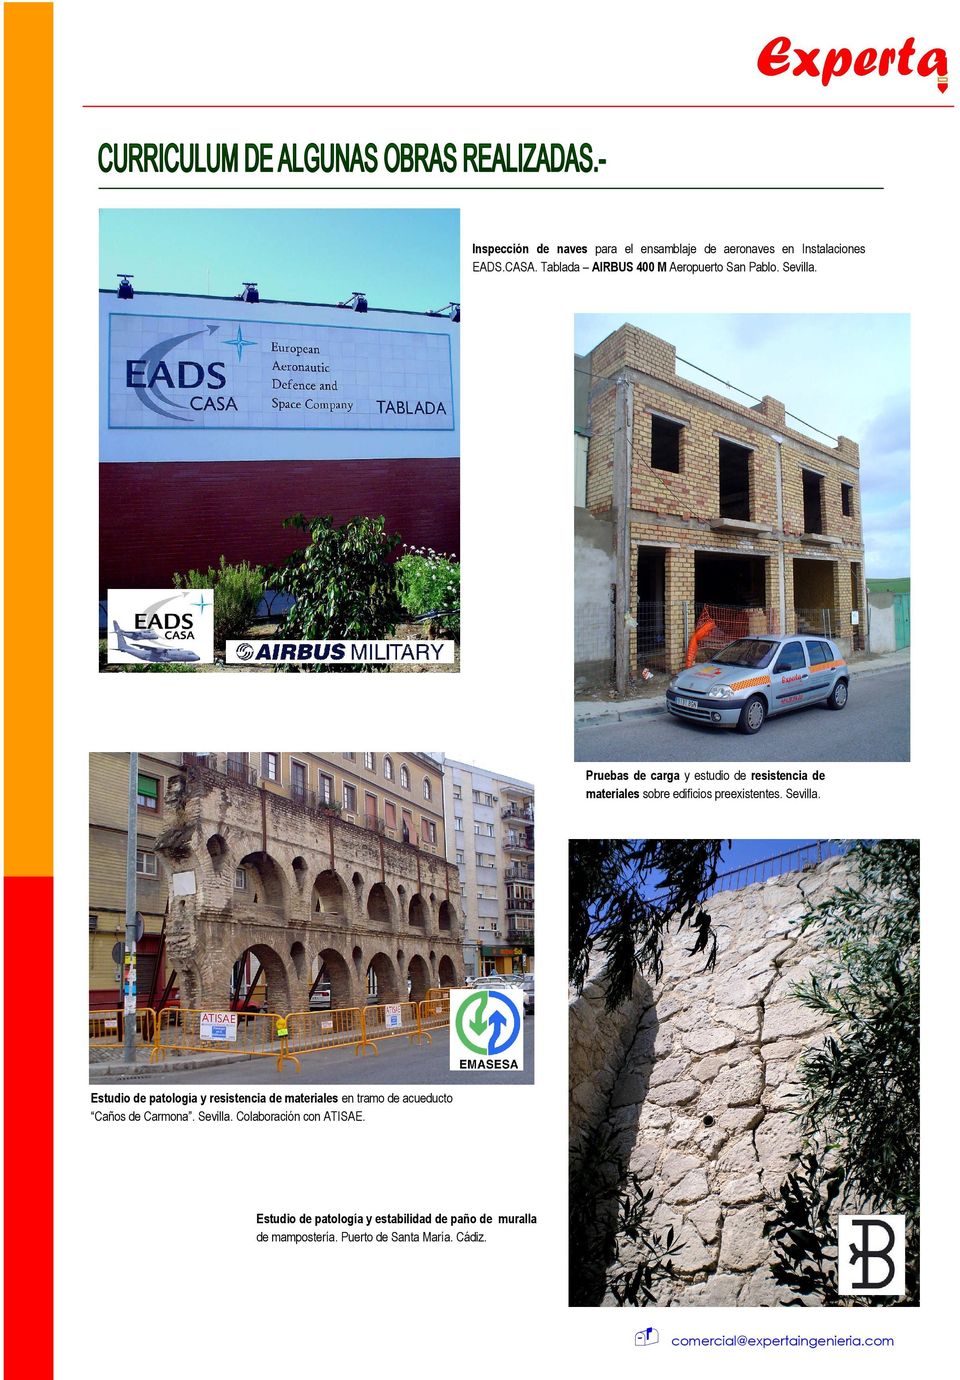 Pruebas de carga y estudio de resistencia de materiales sobre edificios preexistentes. Sevilla.